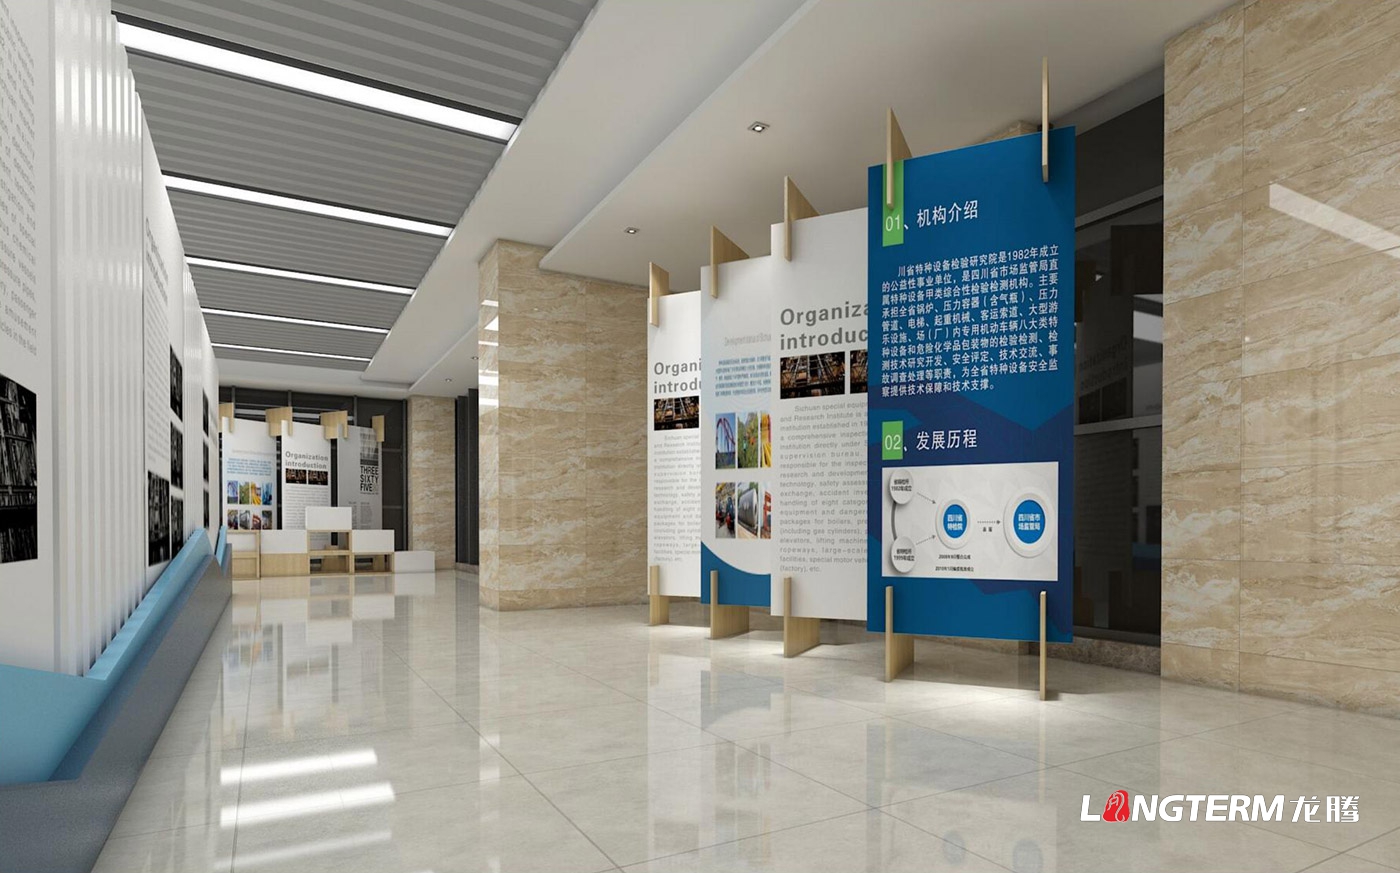 四川省特种设备检验研究院科技成果展览室、特种设备科普展示厅、临展区策划及文化墙建设设计